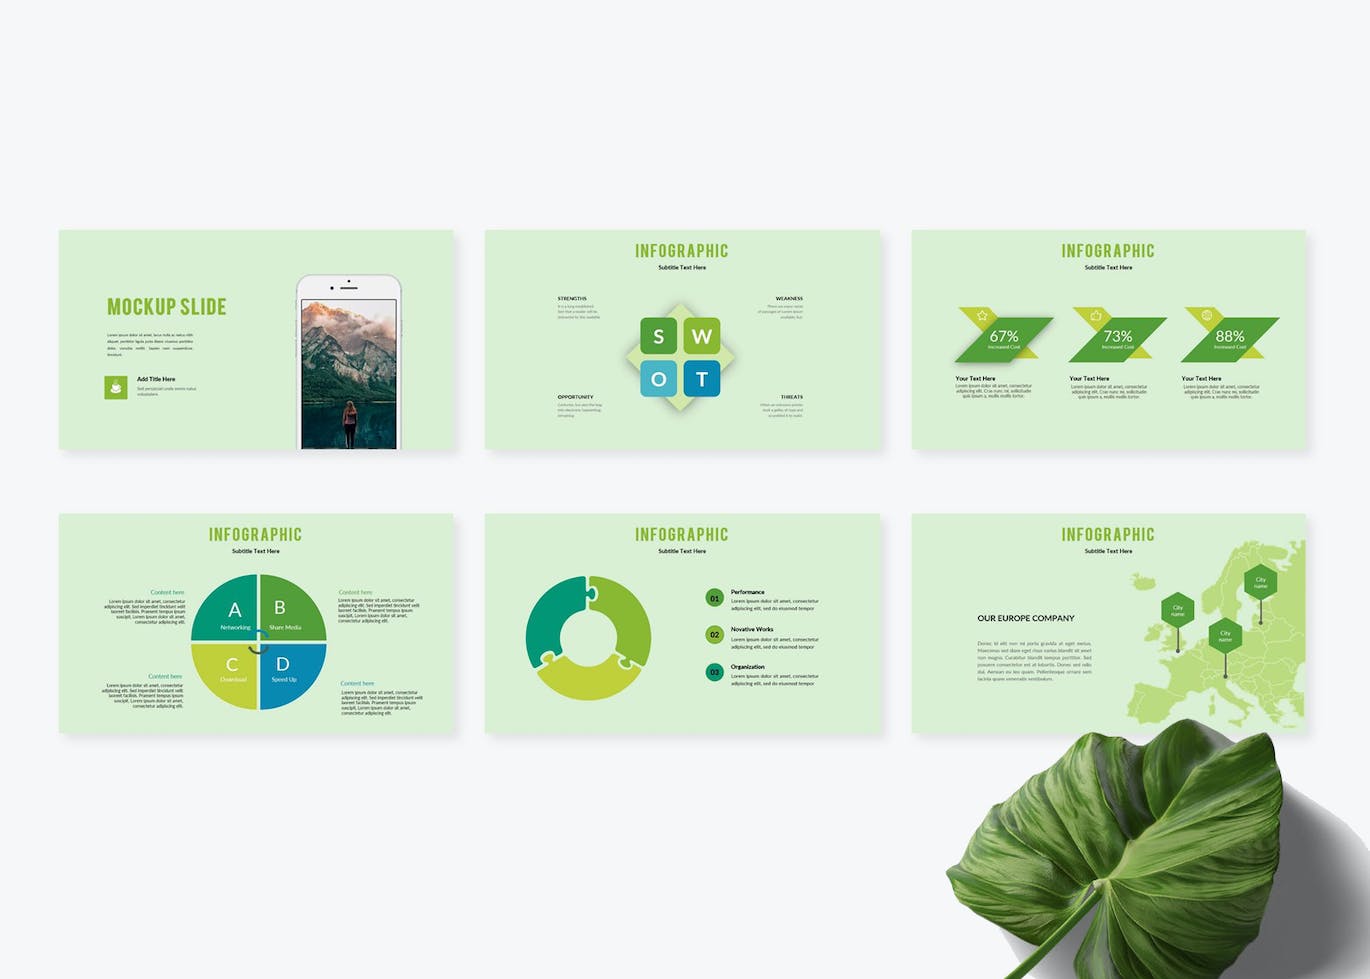 自然创意公司展示PPT幻灯片模板免费下载(图1)